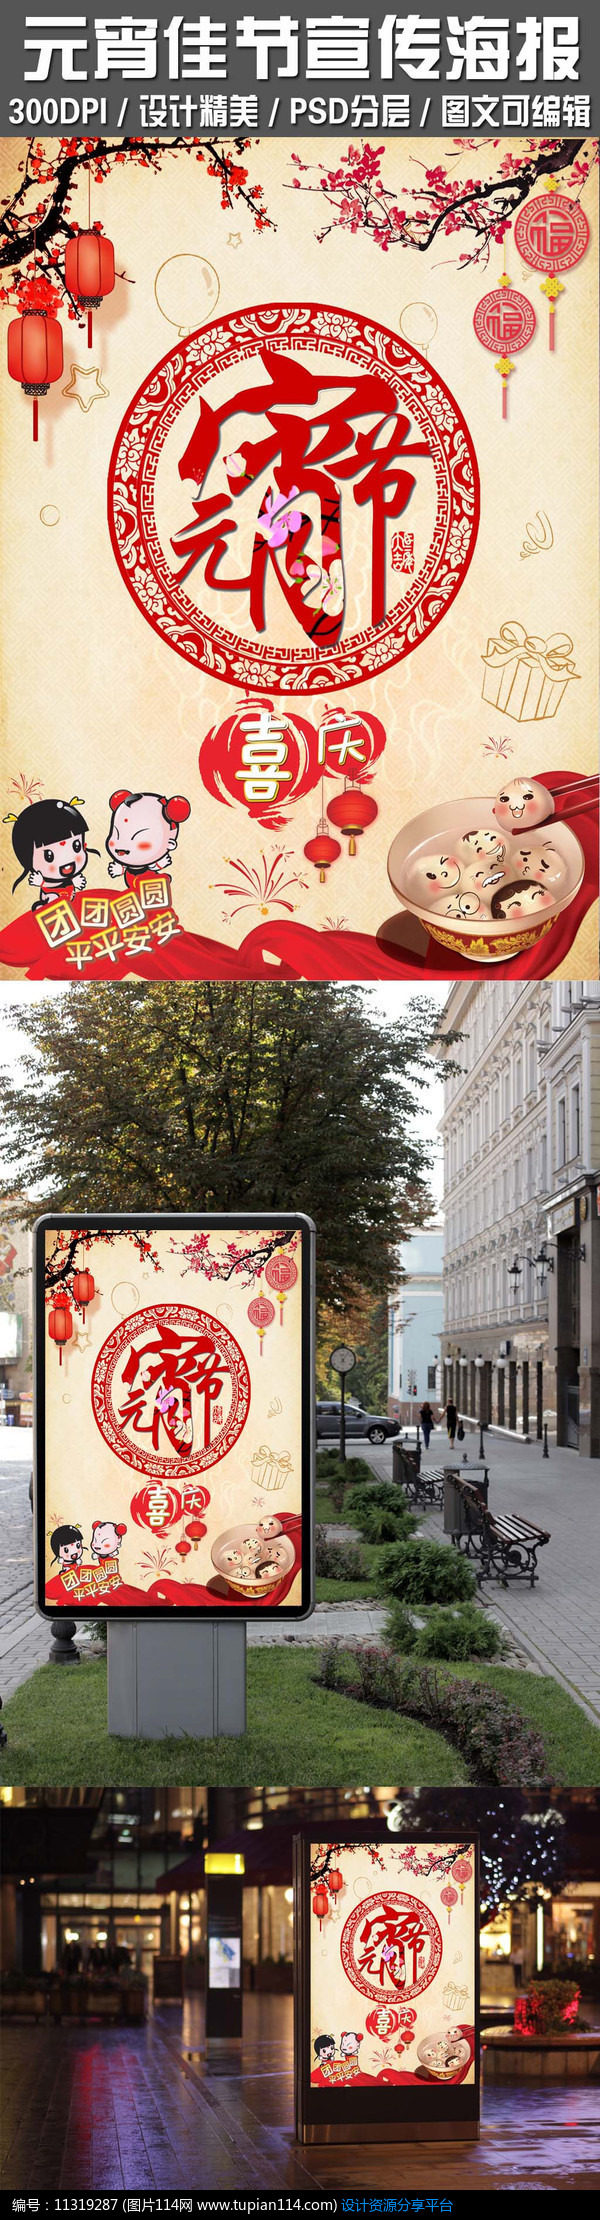 喜庆团圆元宵节宣传促销广告海报